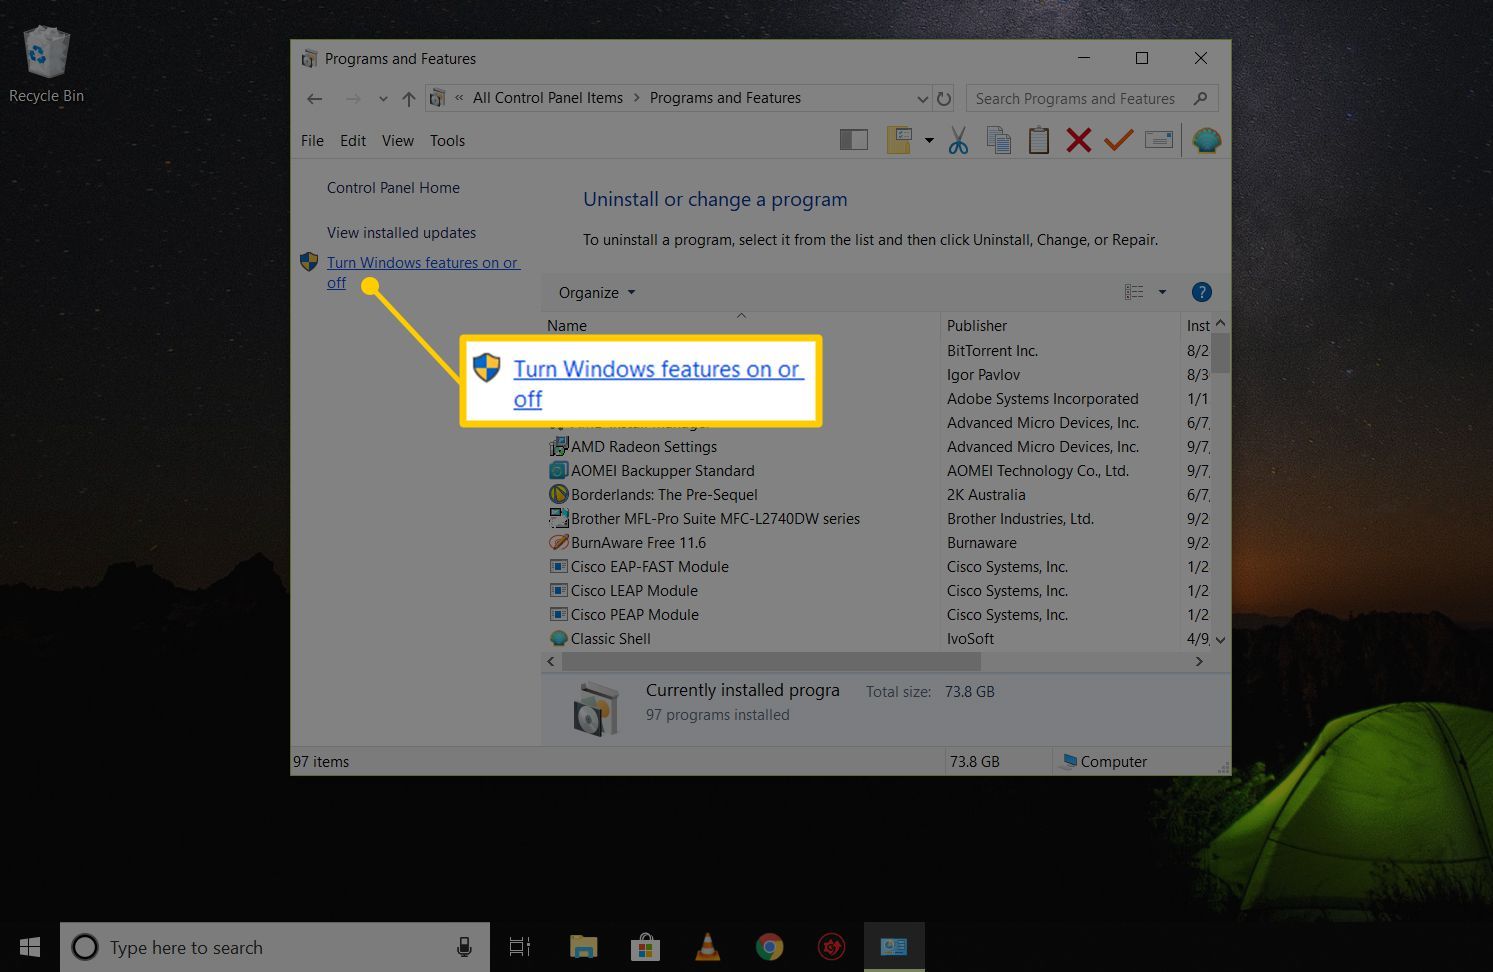 Включение или отключение функции Windows в панели управления «Программы и компоненты» в Windows 10